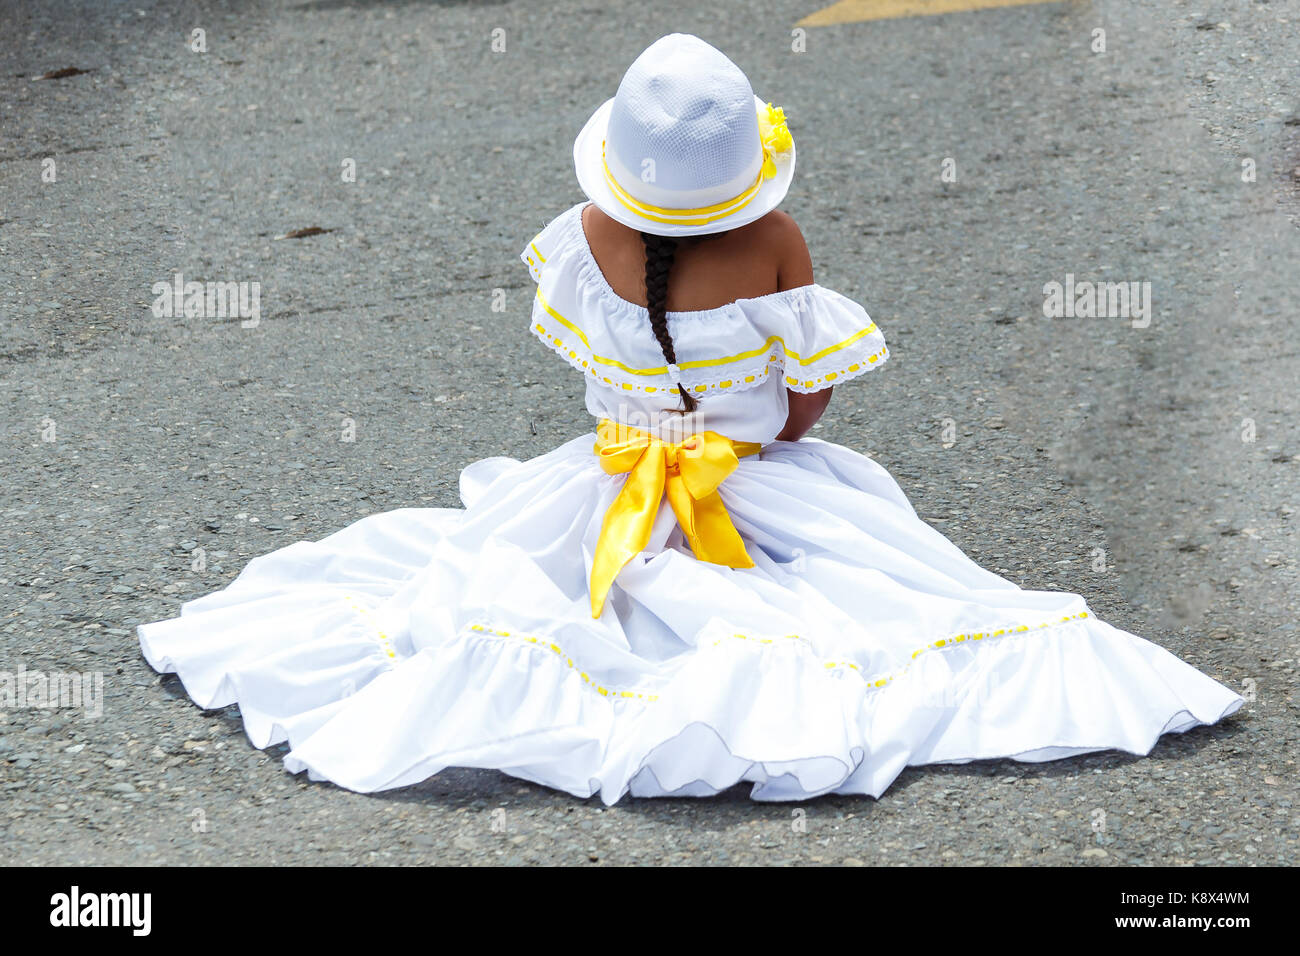 Petite fille dans l'habillement traditionnel du Costa Rica assis sur la rue Banque D'Images